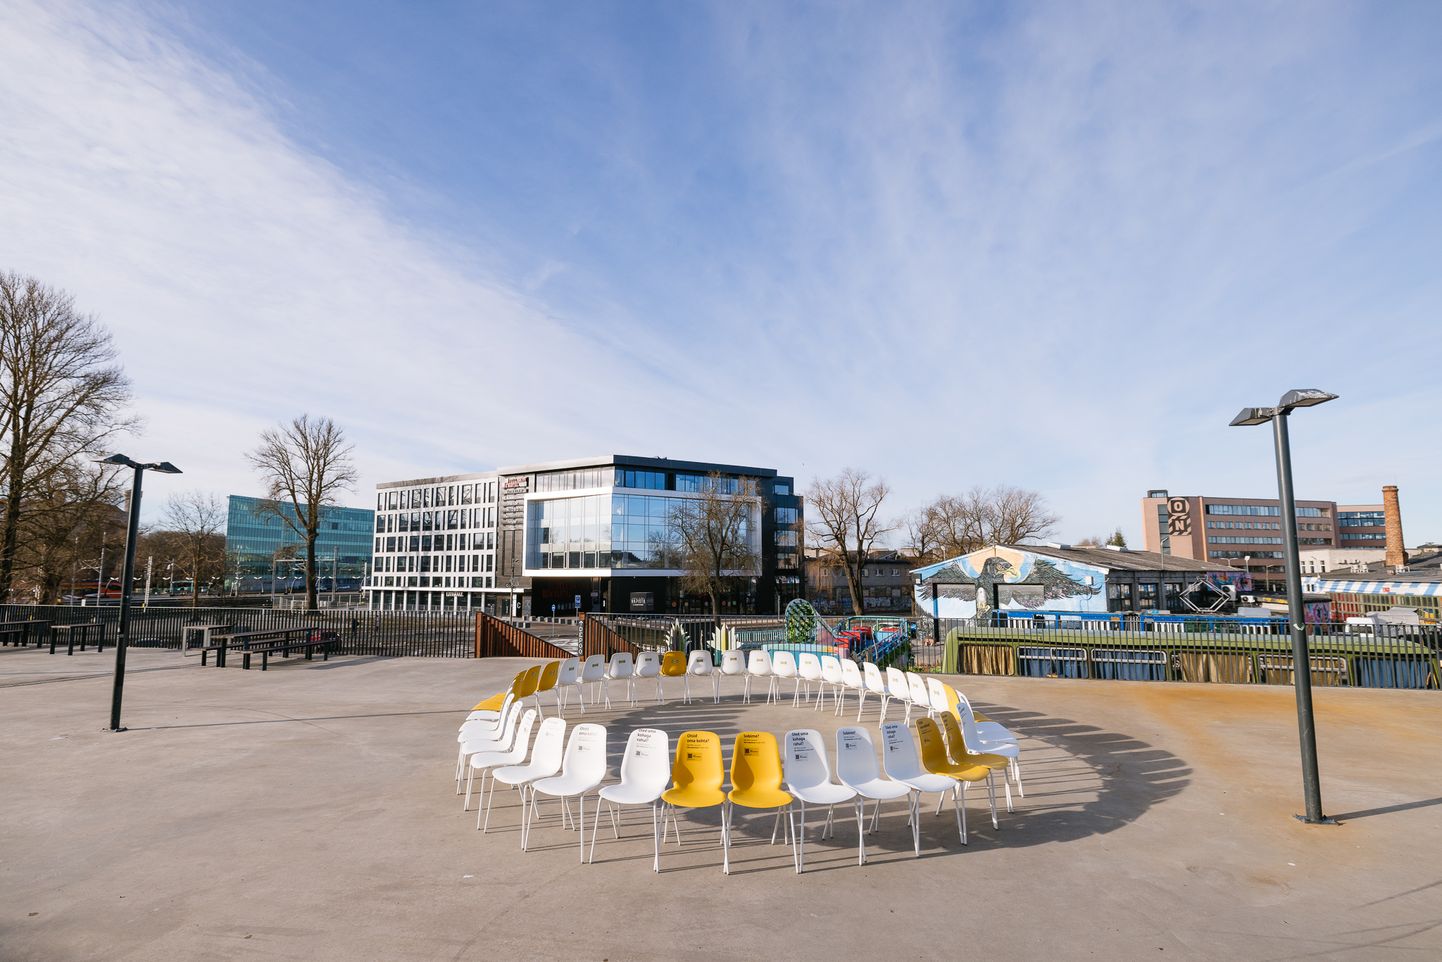 KEA будет путешествовать по Таллинну с инсталляцией – более 200 стульев будут активно рекламировать возможность работы в IKEA.